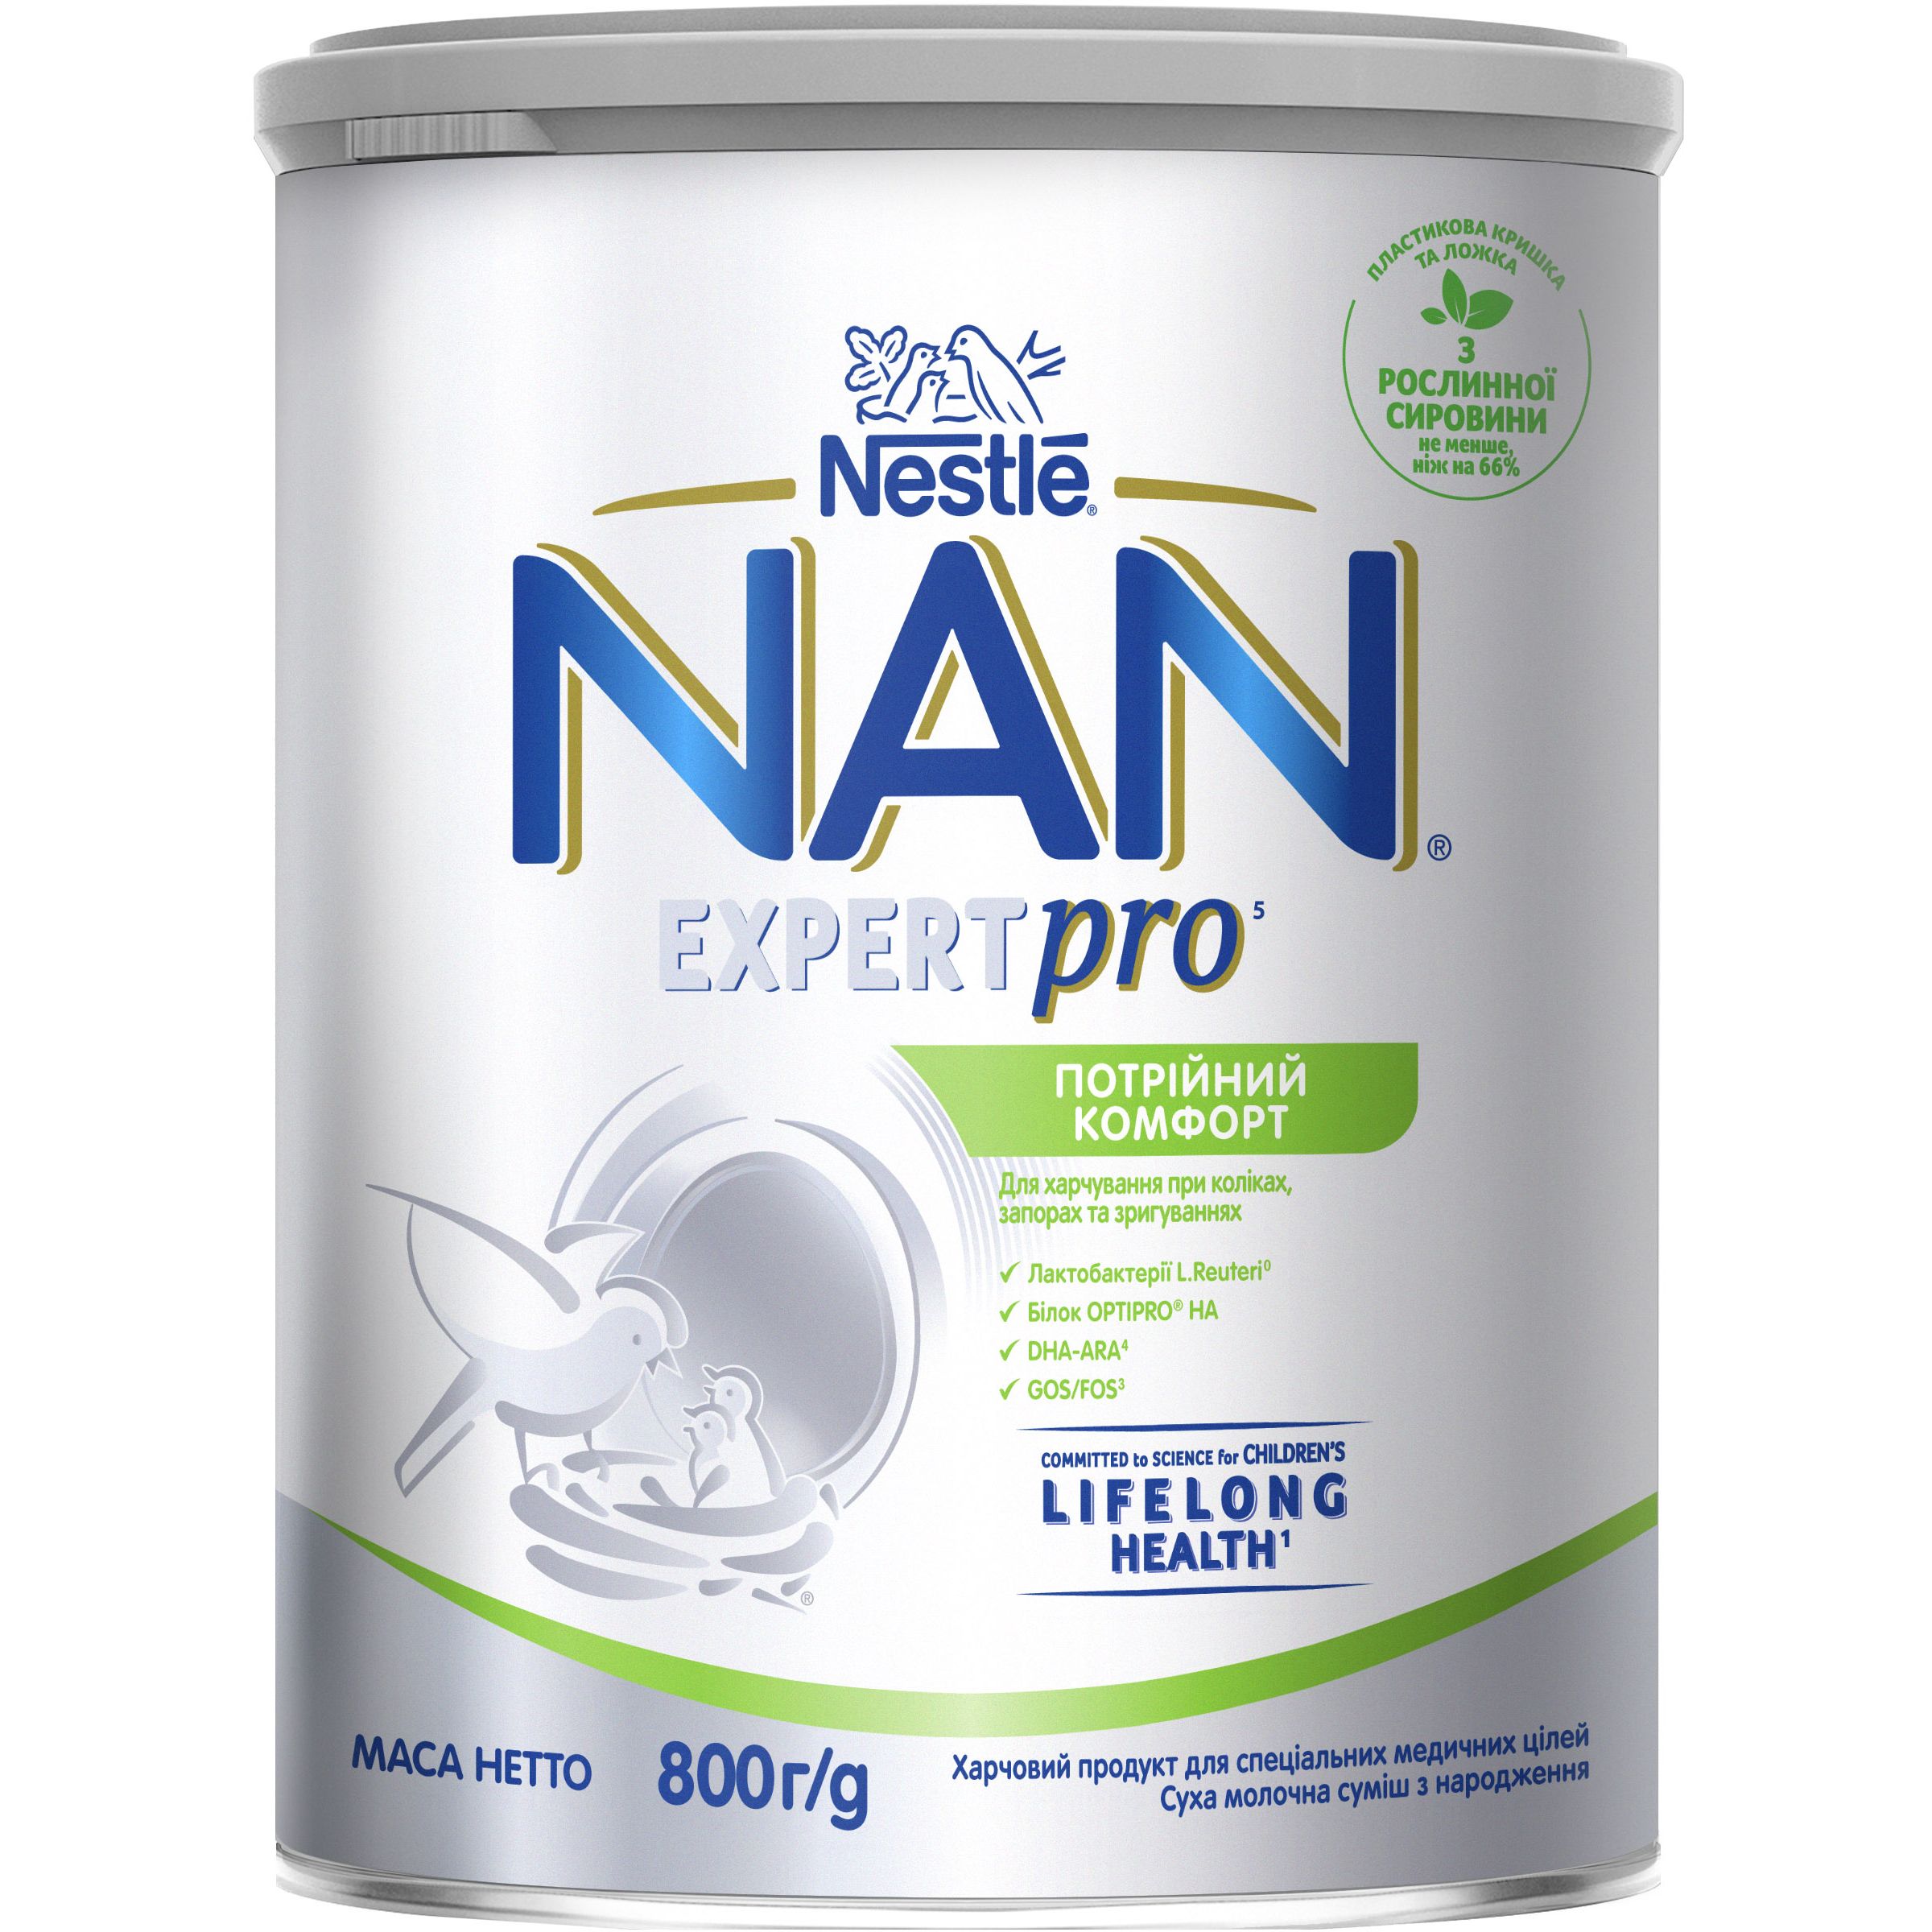 Суха молочна суміш NAN Expert Pro Потрійний комфорт, 800 г - фото 1